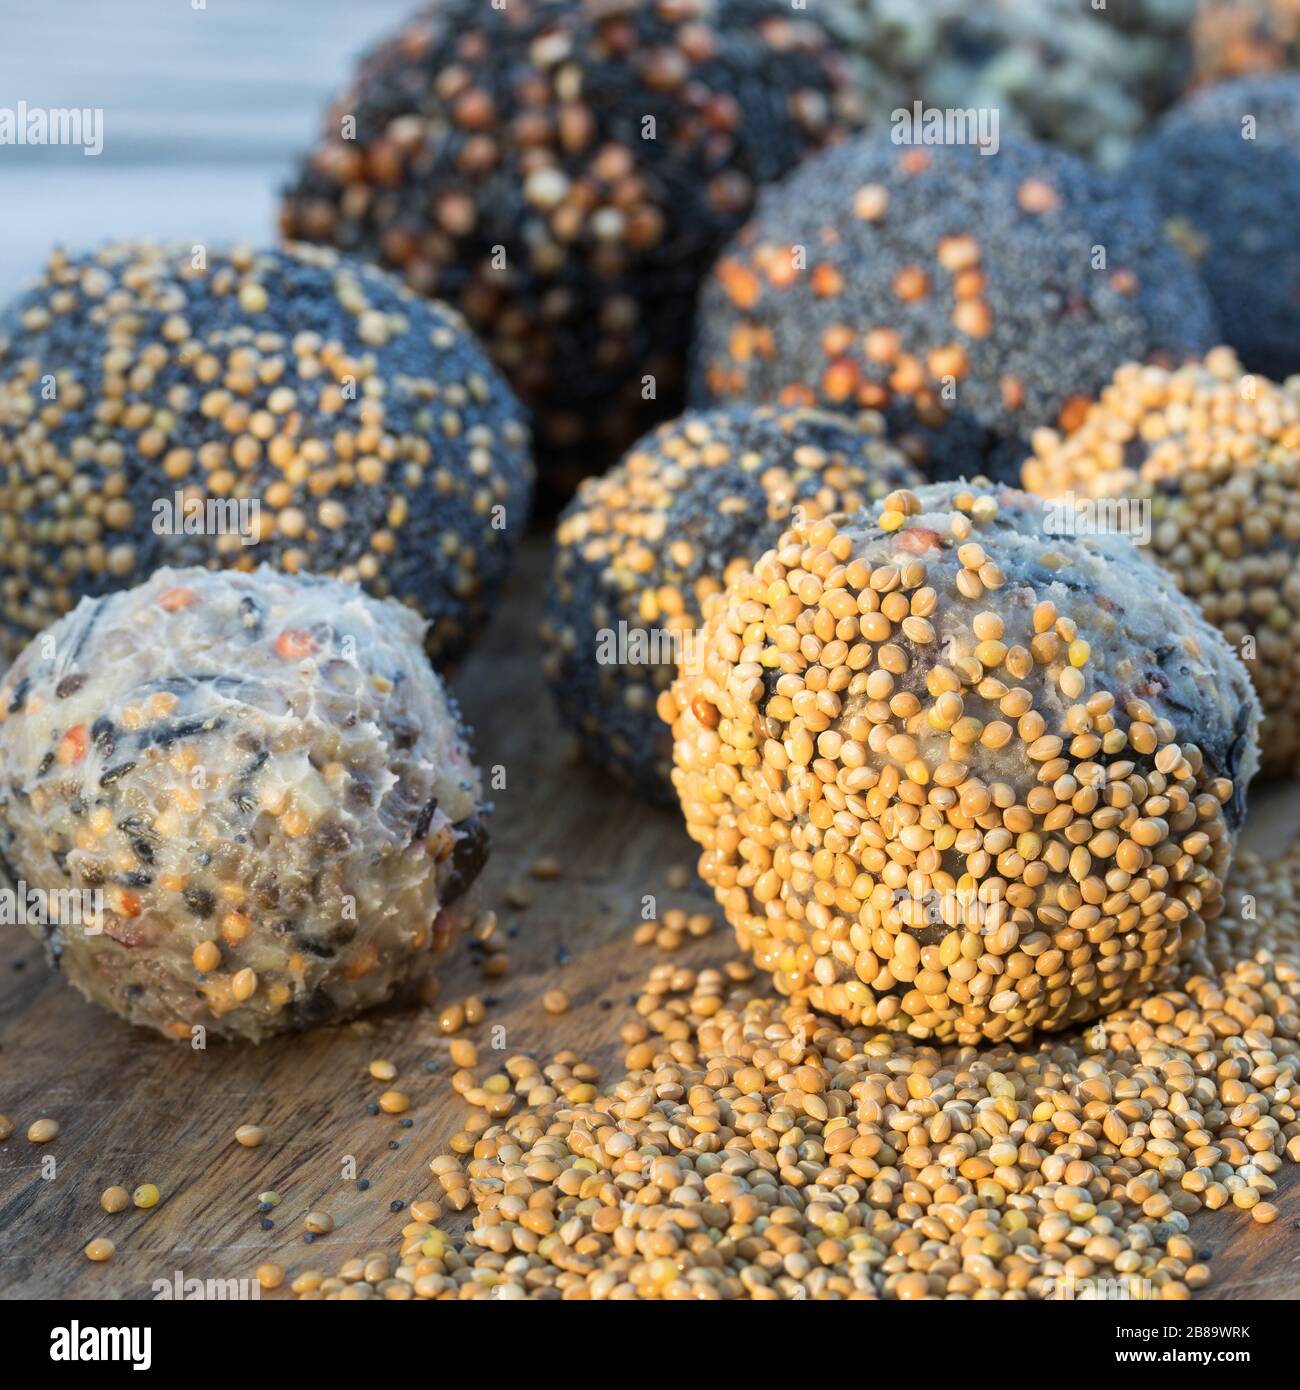 Fatballs faits maison à base de cohuile durcie, graines de tournesol, huile de tournesol et graines et noix mixtes, Allemagne Banque D'Images